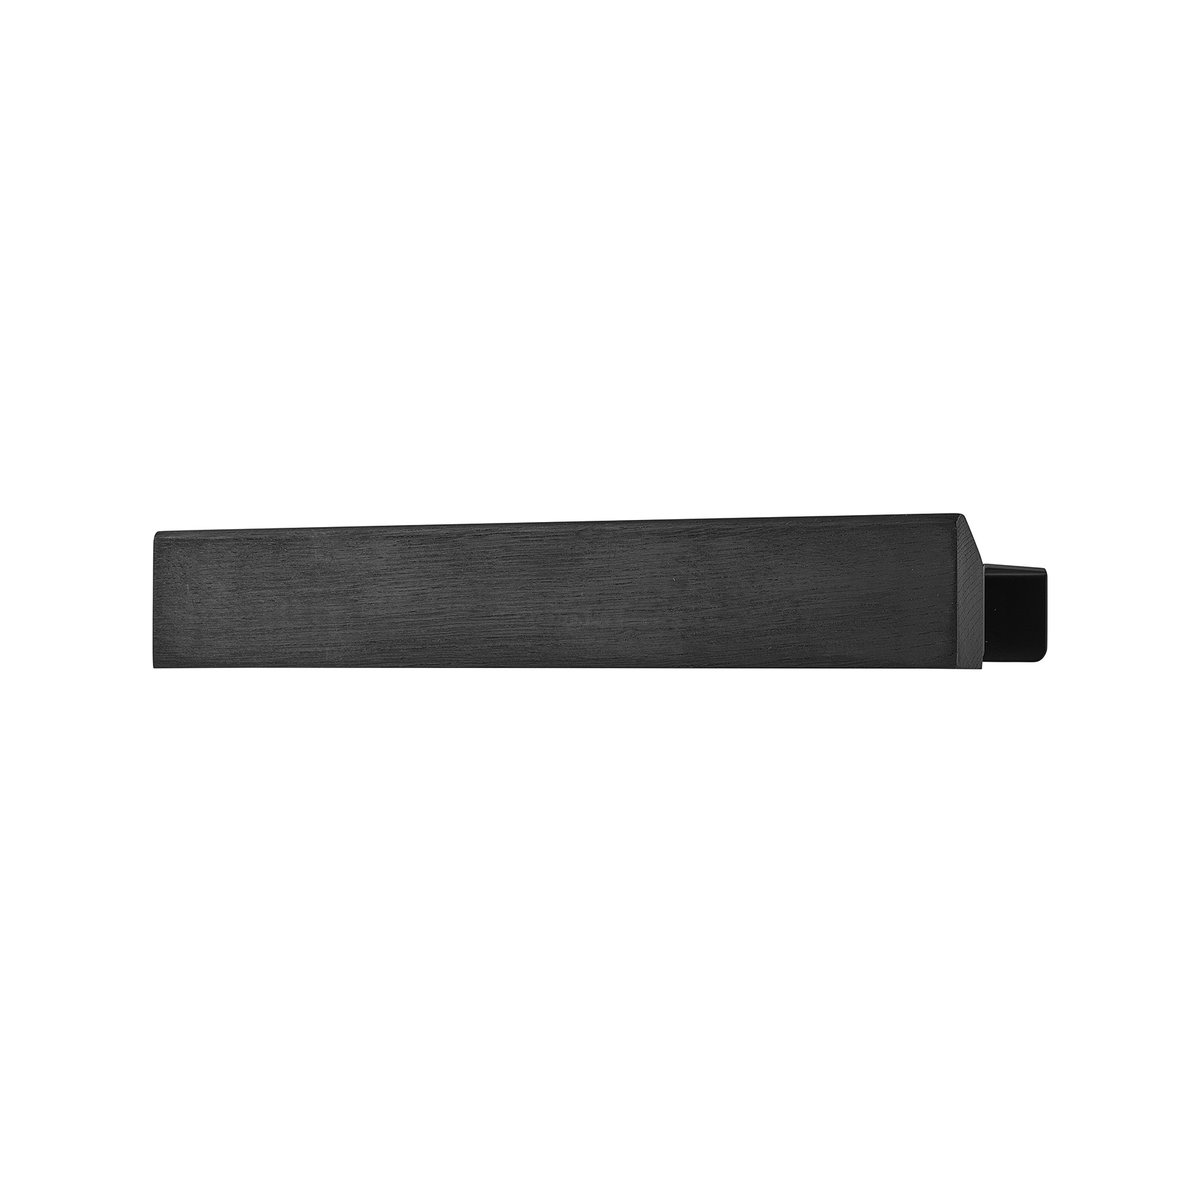 Gejst Flex Rail magneettilista 40 cm Mustaksi petsattu tammi-musta